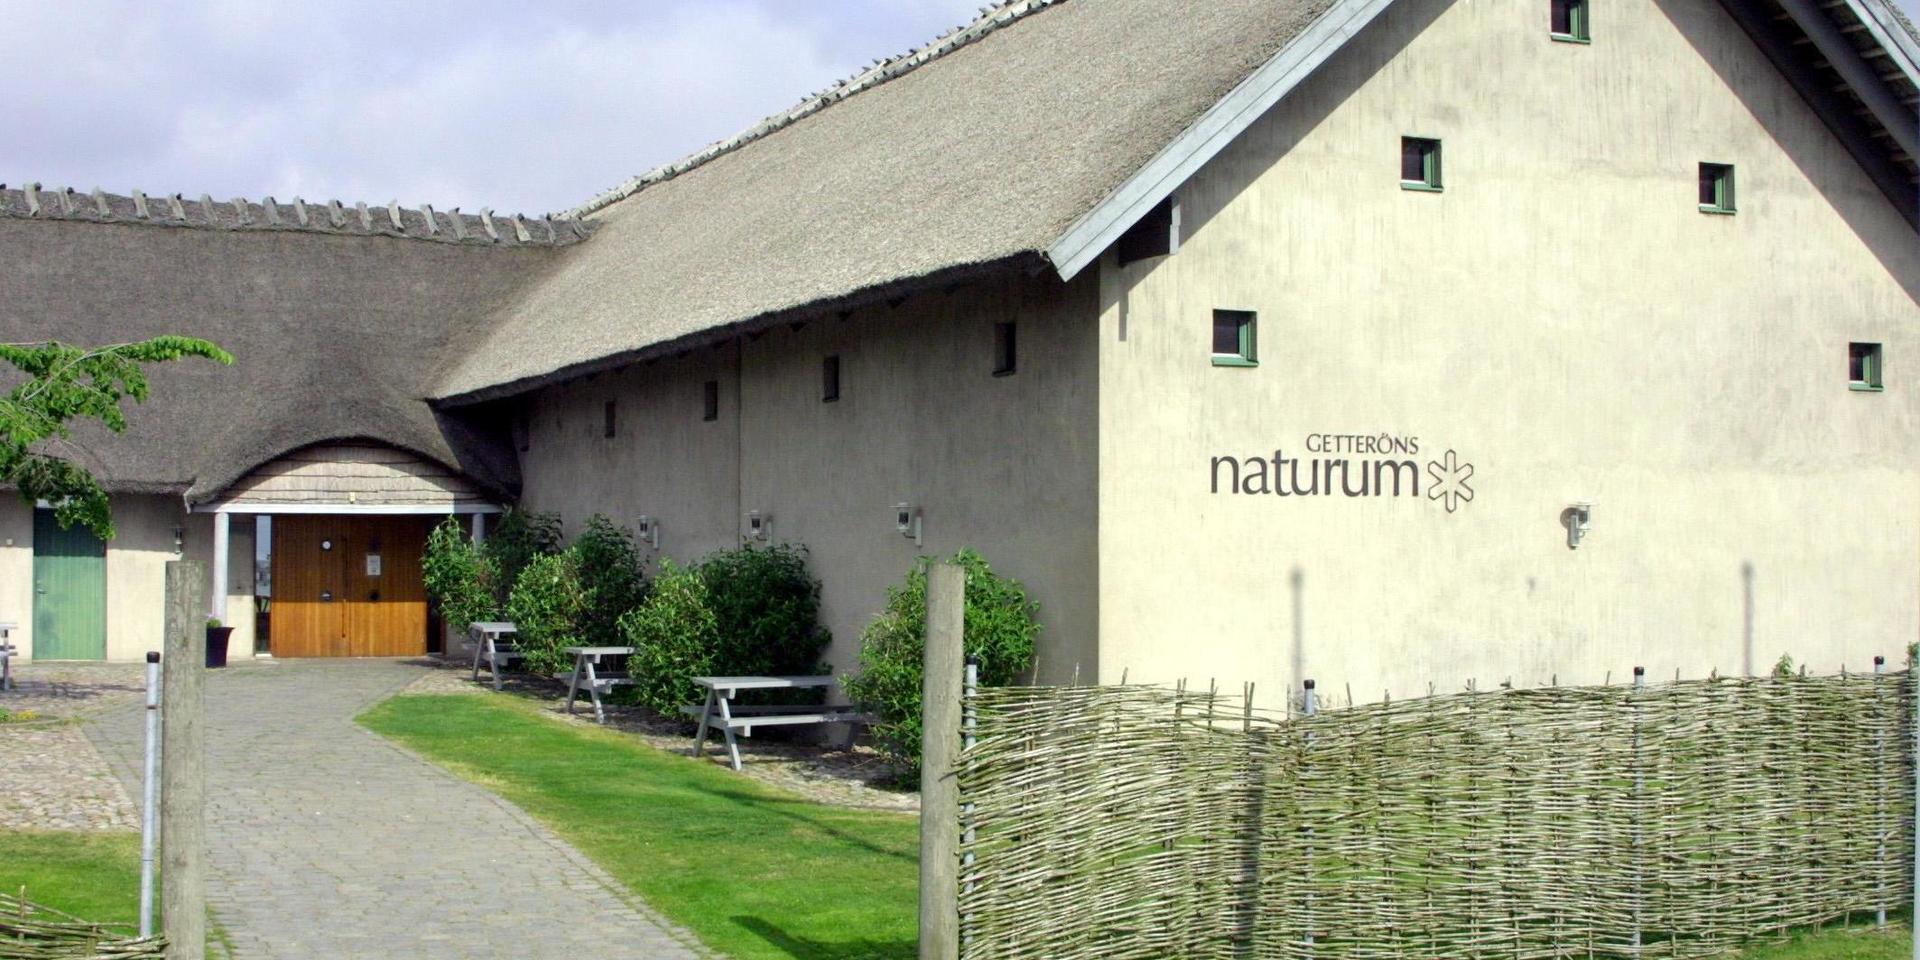 Naturcentrum. Getteröns Naturcentrum innehåller kafé, butik, konferens- och festlokaler och en permanent fågelutställning. Men i fredags begärdes kafé och konferensföretaget i konkurs.